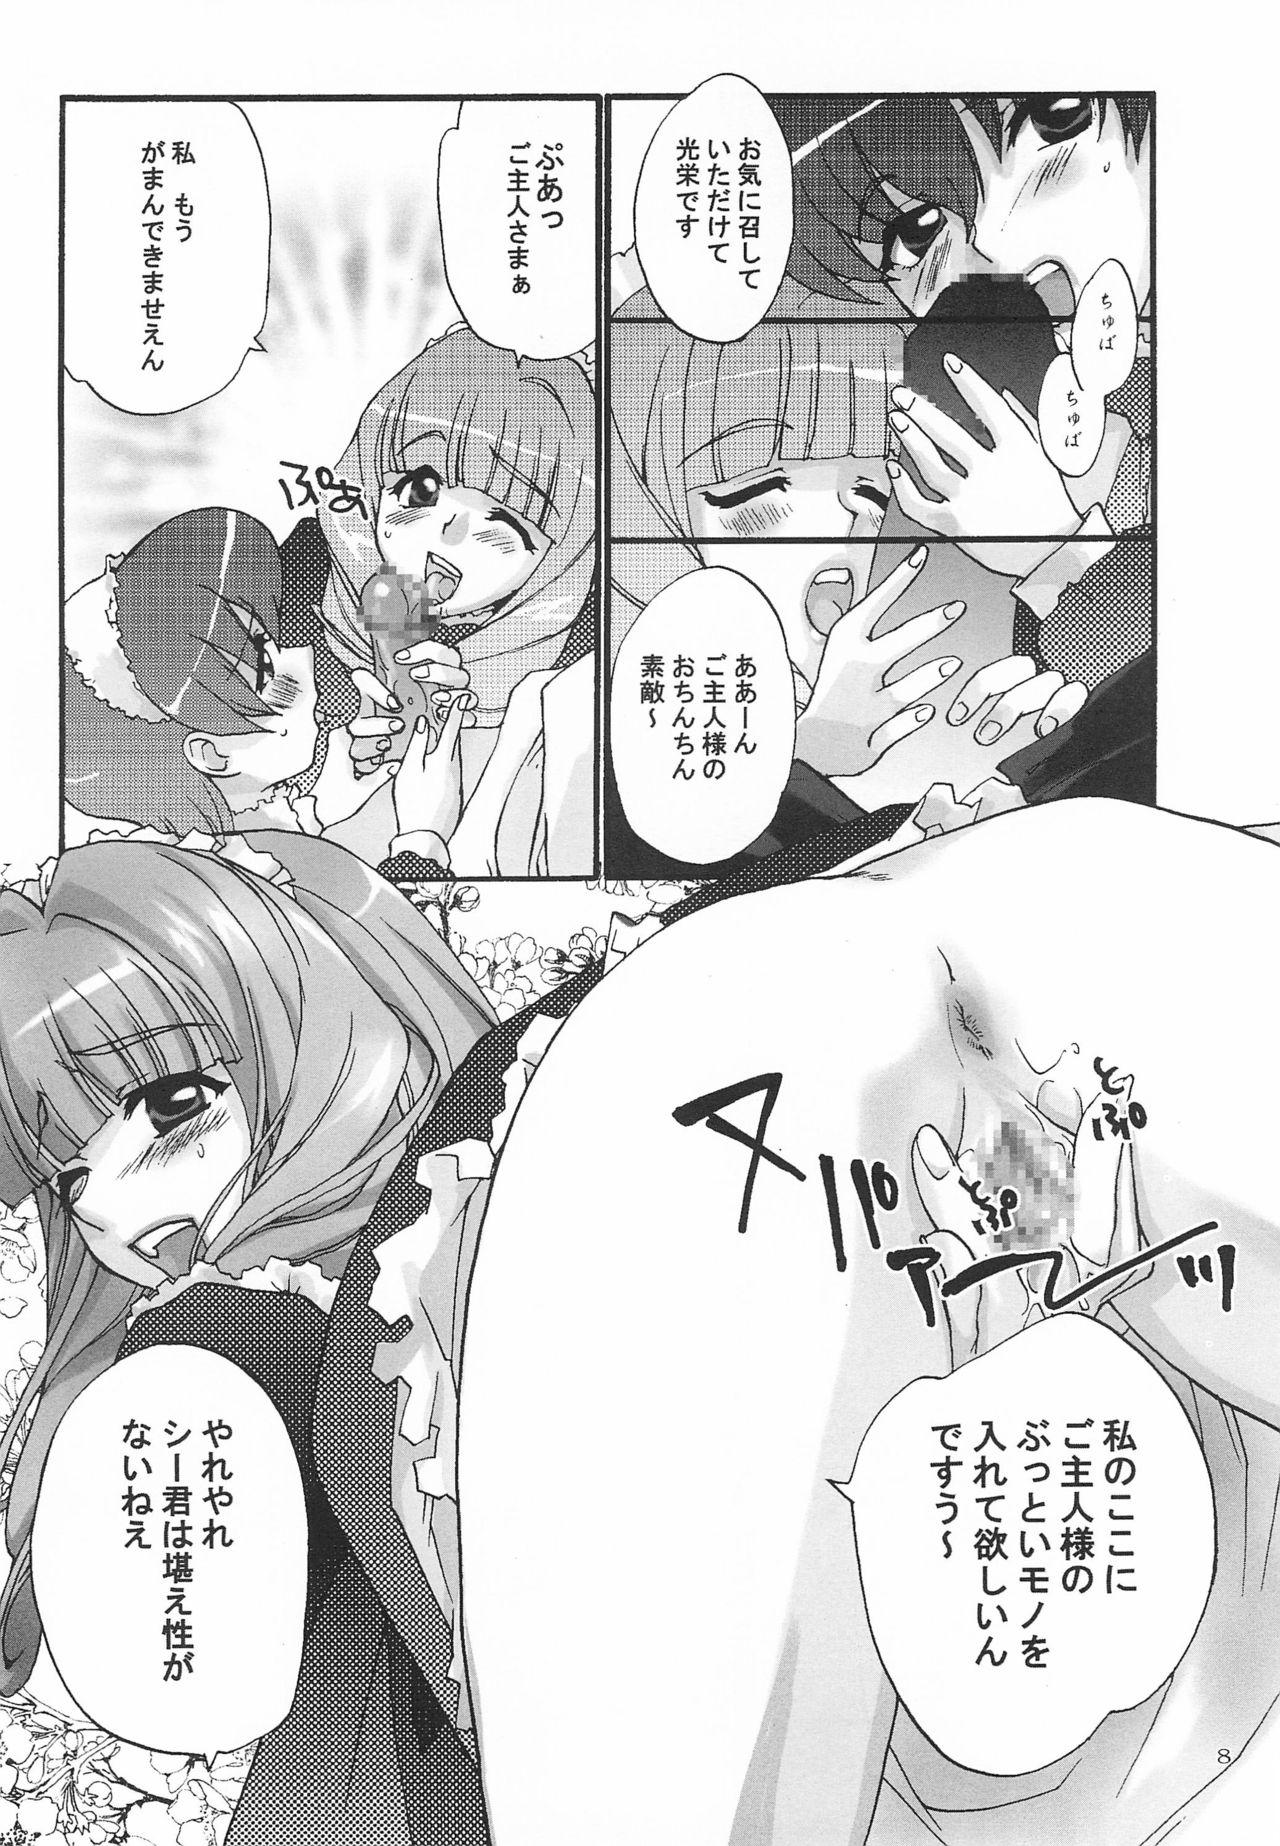 Gaydudes Alleluia - Sakura taisen | sakura wars Mallu - Page 10